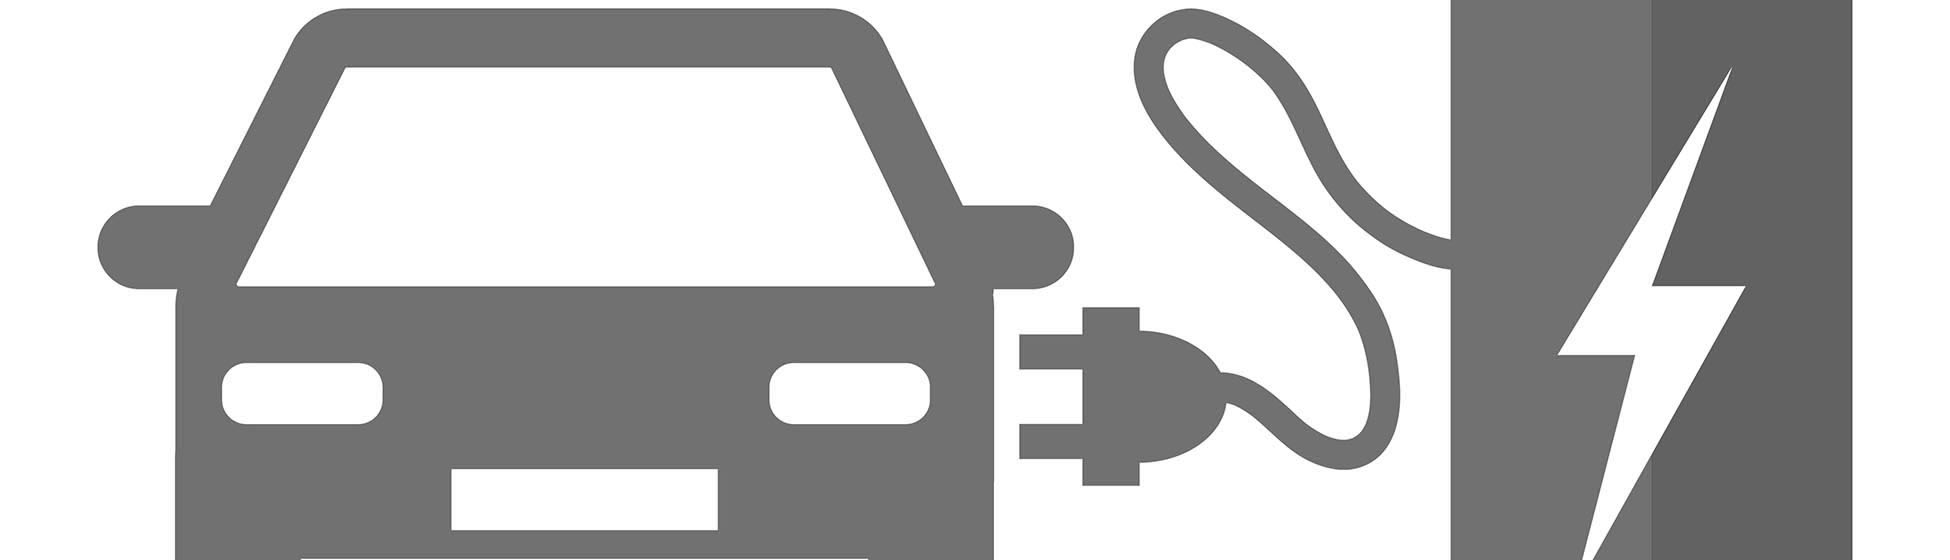 Norme installation borne de recharge véhicule électrique